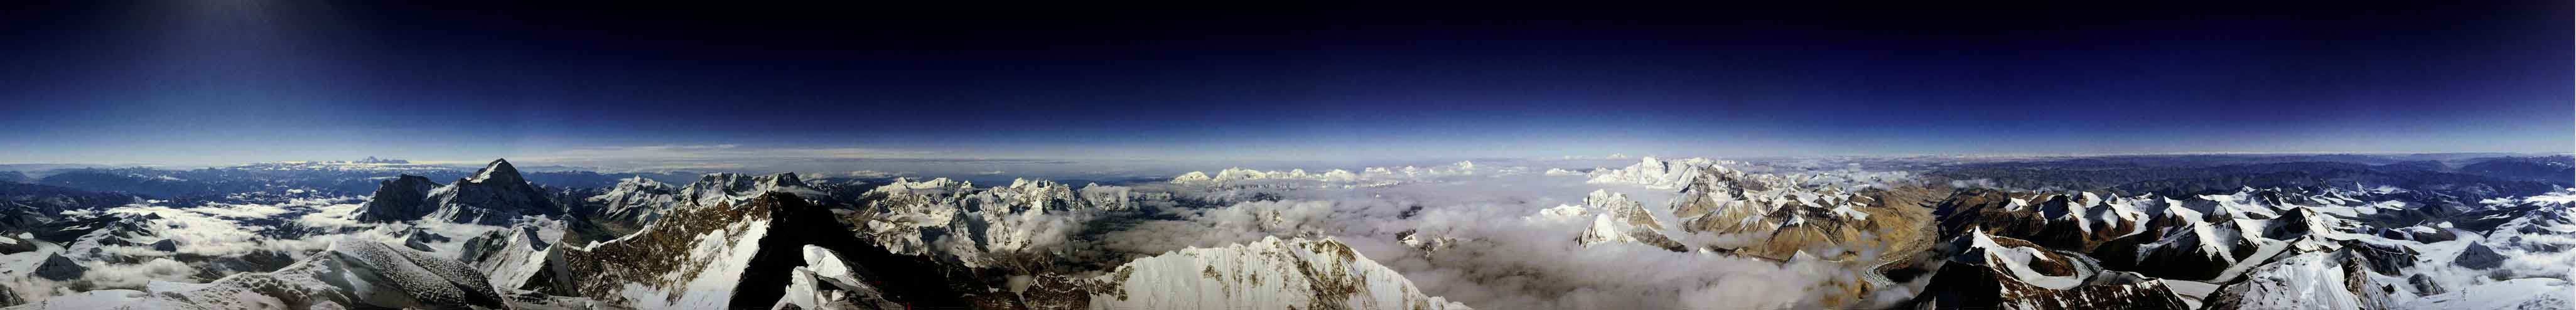 La vista desde el Everest